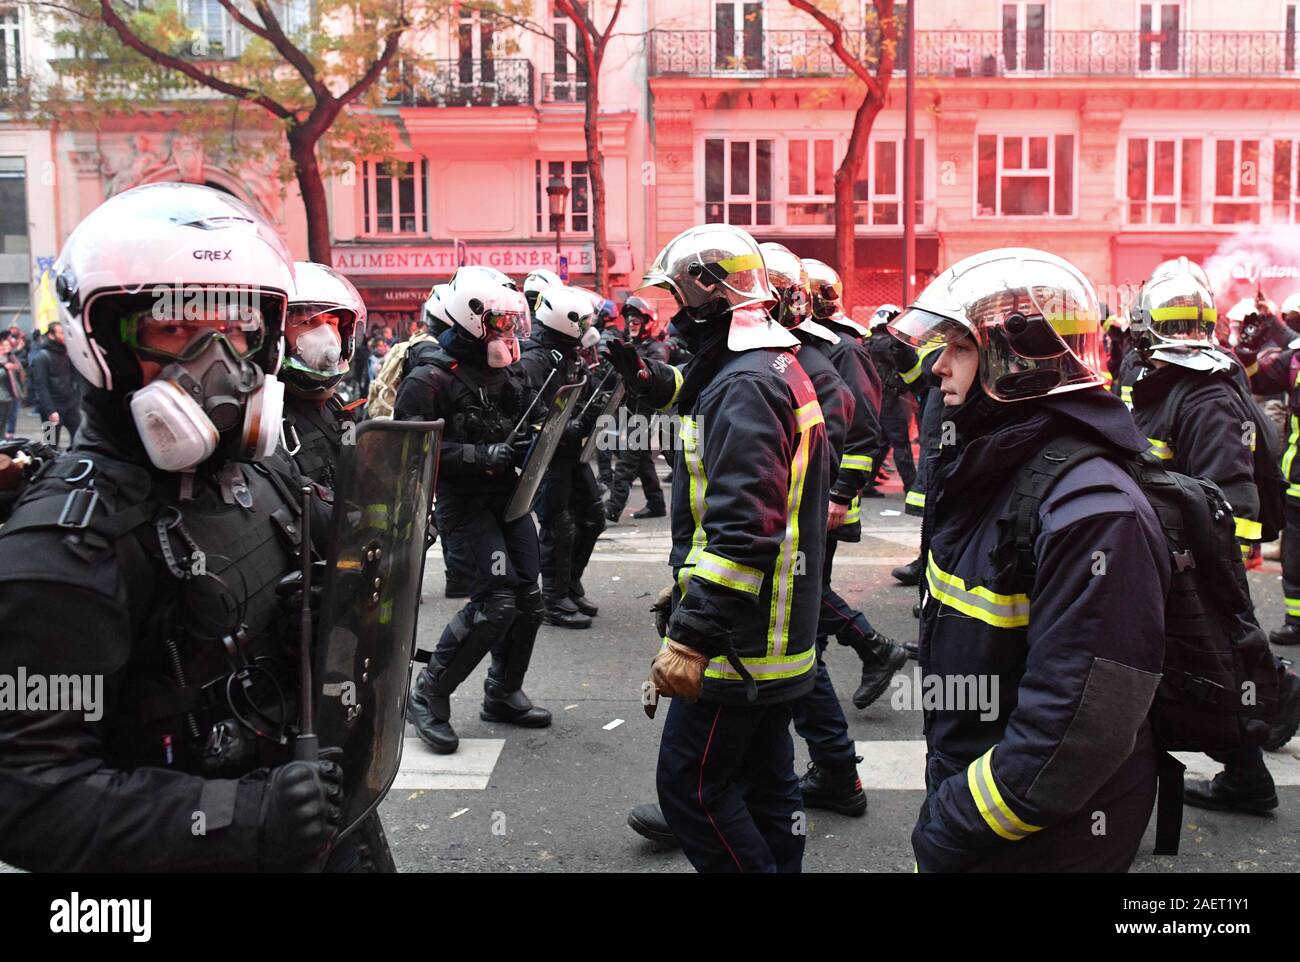 *** Streng KEINE VERKÄUFE IN DEN FRANZÖSISCHEN MEDIEN UND VERLAGE *** Dezember 05, 2019 - Paris, Frankreich: Französische Feuerwehrleute Streik in Richtung der Polizei Linien mit ihren erhobenen Armen nach Auseinandersetzungen stattgefunden hat vor einer Demonstration gegen die Rentenreform der Präsident Emmanuel's Längestrich. Die Polizei zog und lassen Sie die März fortgesetzt. Zehntausende von Menschen demonstrierten in Paris ihren Widerstand gegen das Vorhaben der Regierung zu äußern. Stockfoto